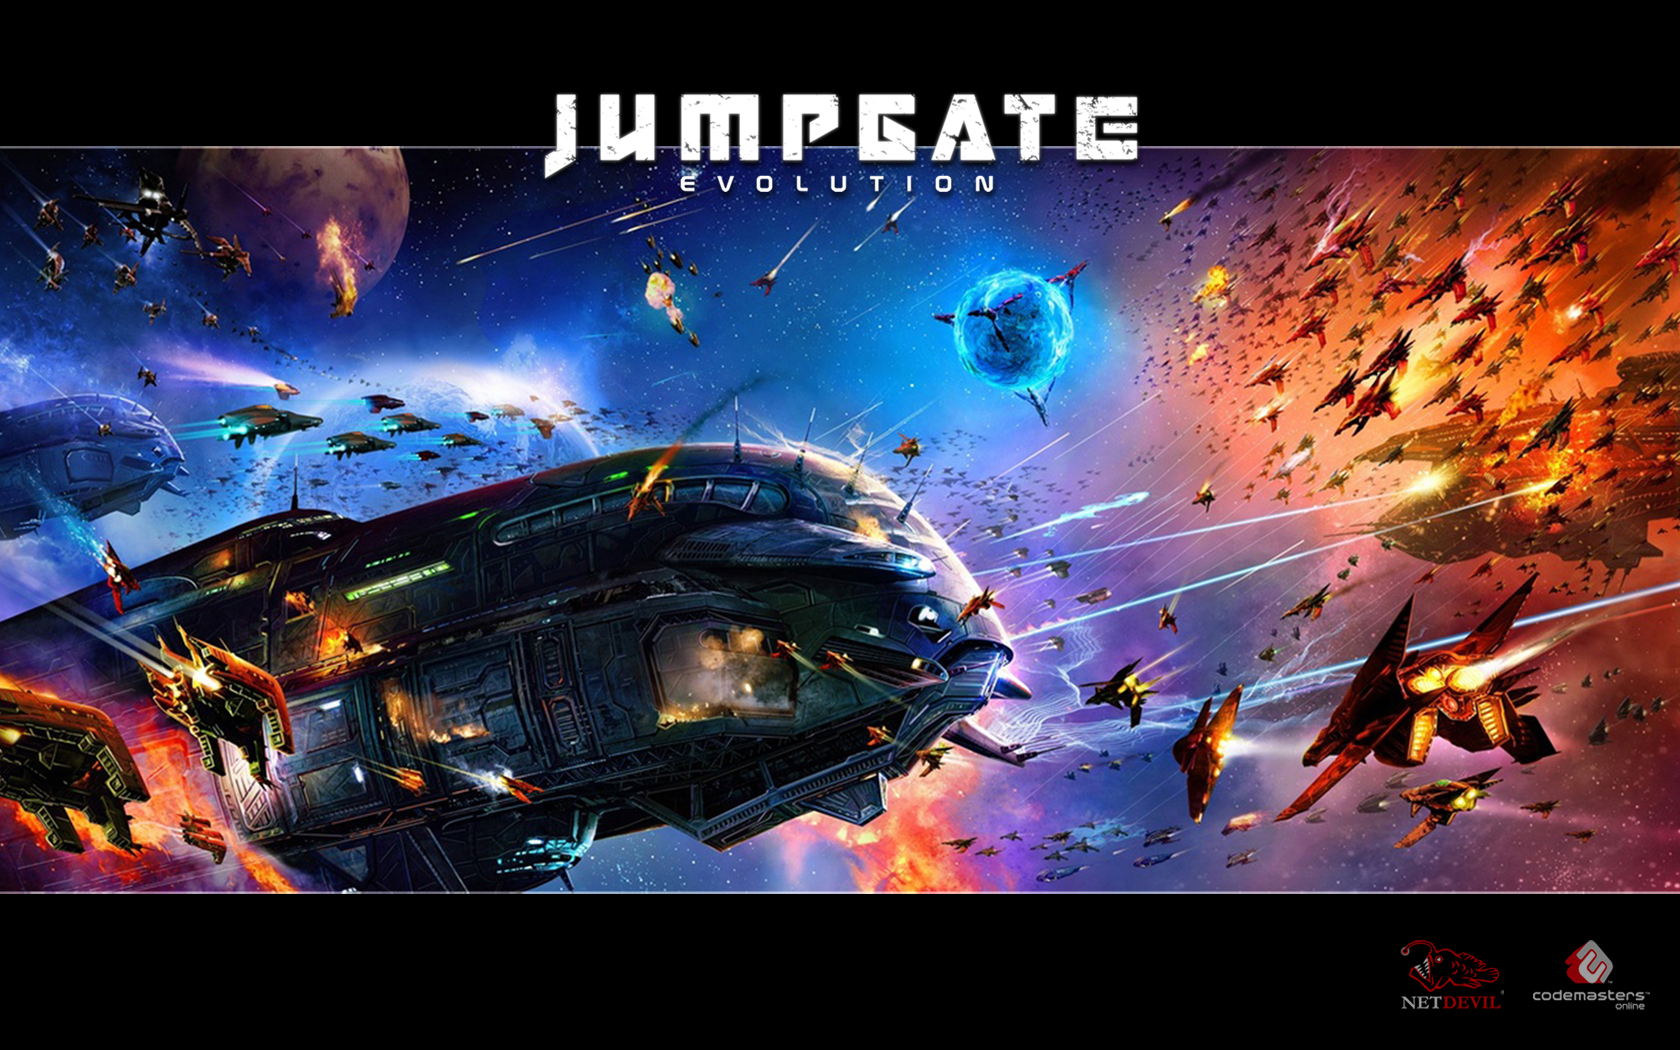 Jumpgate Evolution HD wallpapers, Desktop wallpaper - most viewed